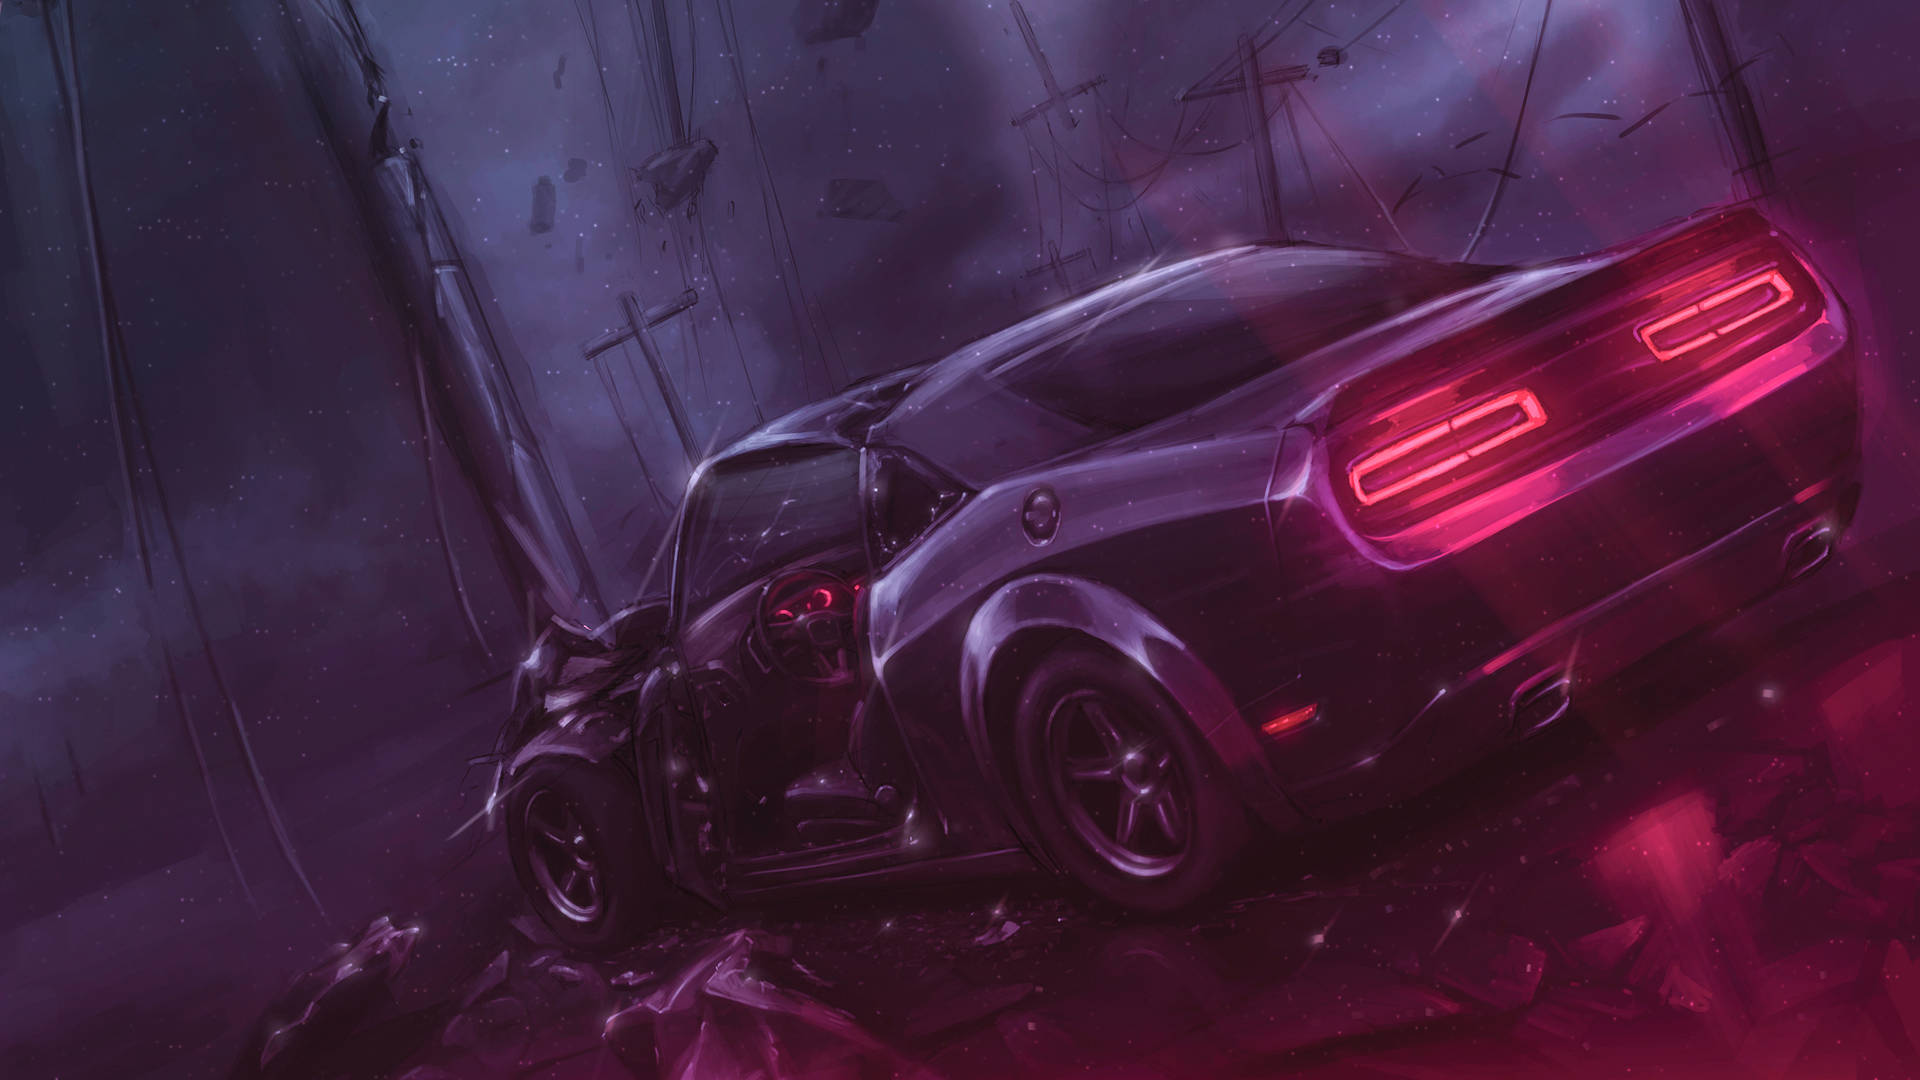 Caption: Aesthetic Neon Glow of Dodge Challenger Demon in 4K Resolution Wallpaper